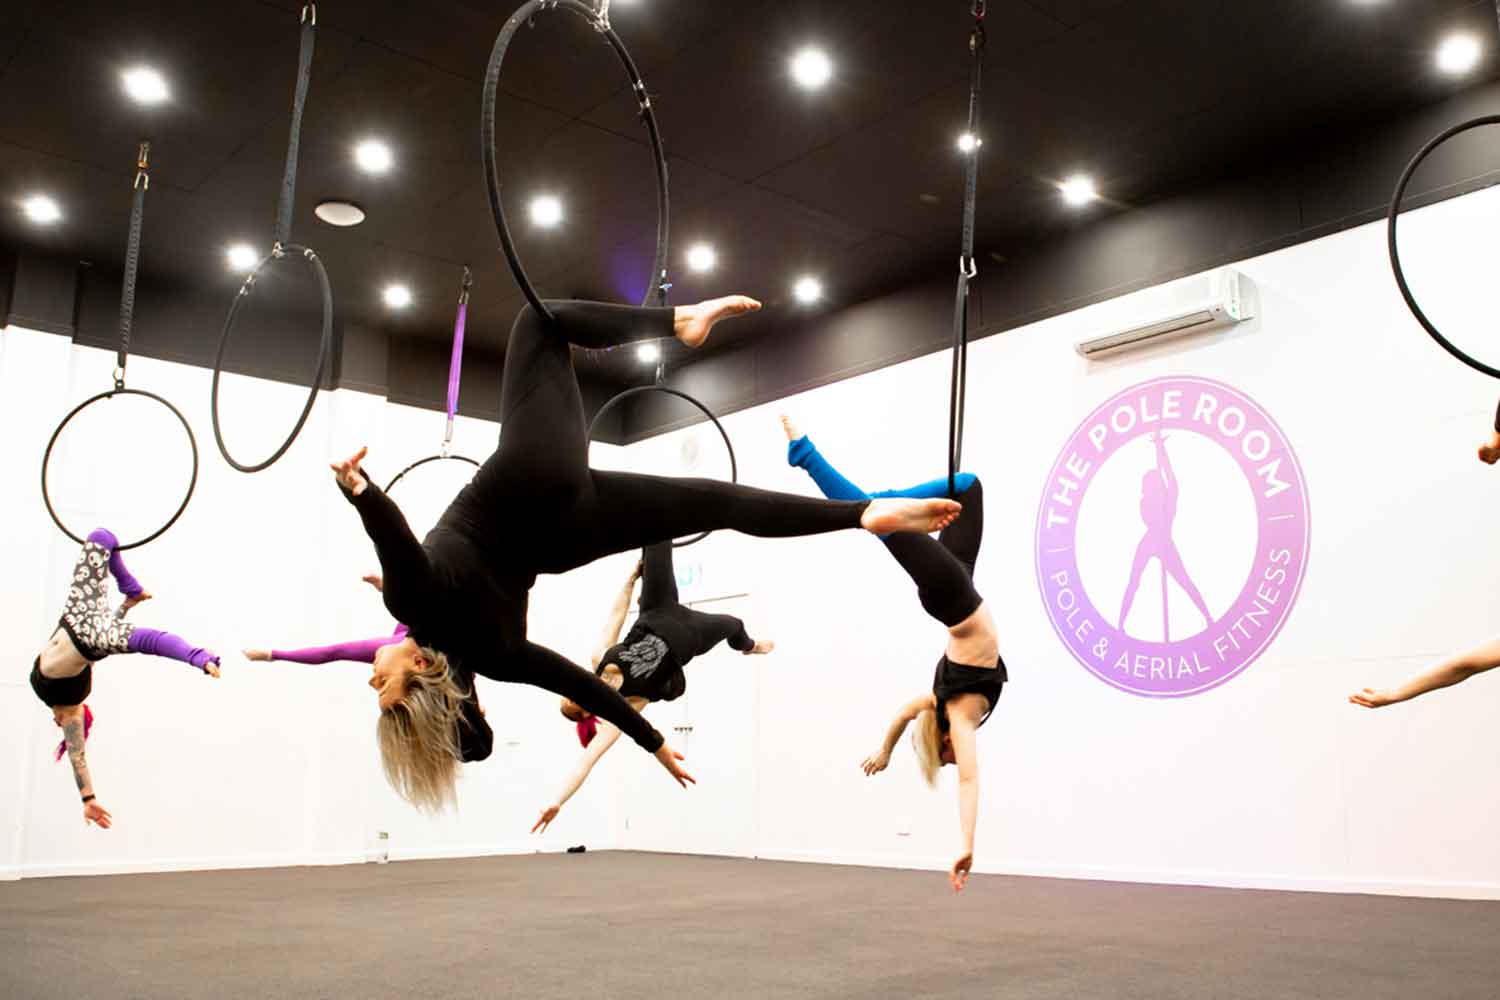 pole dancing classes melbourne, pole fitness, group fitness classes, aerial classes, aerial silk classes, aerial silks, aerial fitness